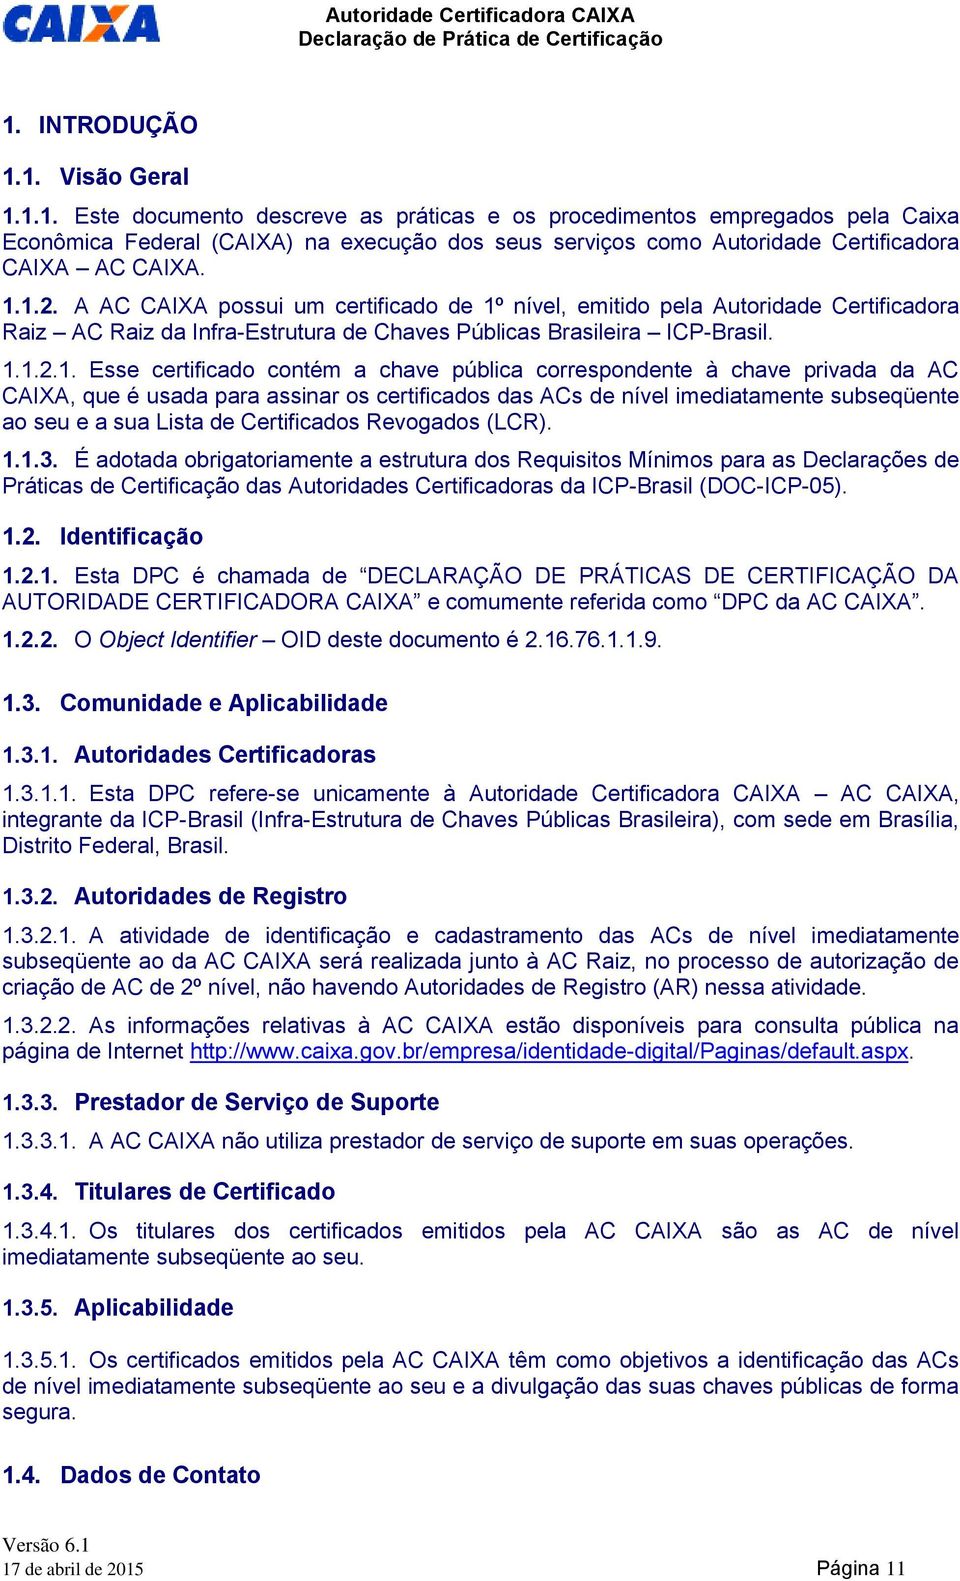 chave pública correspondente à chave privada da AC CAIXA, que é usada para assinar os certificados das ACs de nível imediatamente subseqüente ao seu e a sua Lista de Certificados Revogados (LCR). 1.1.3.